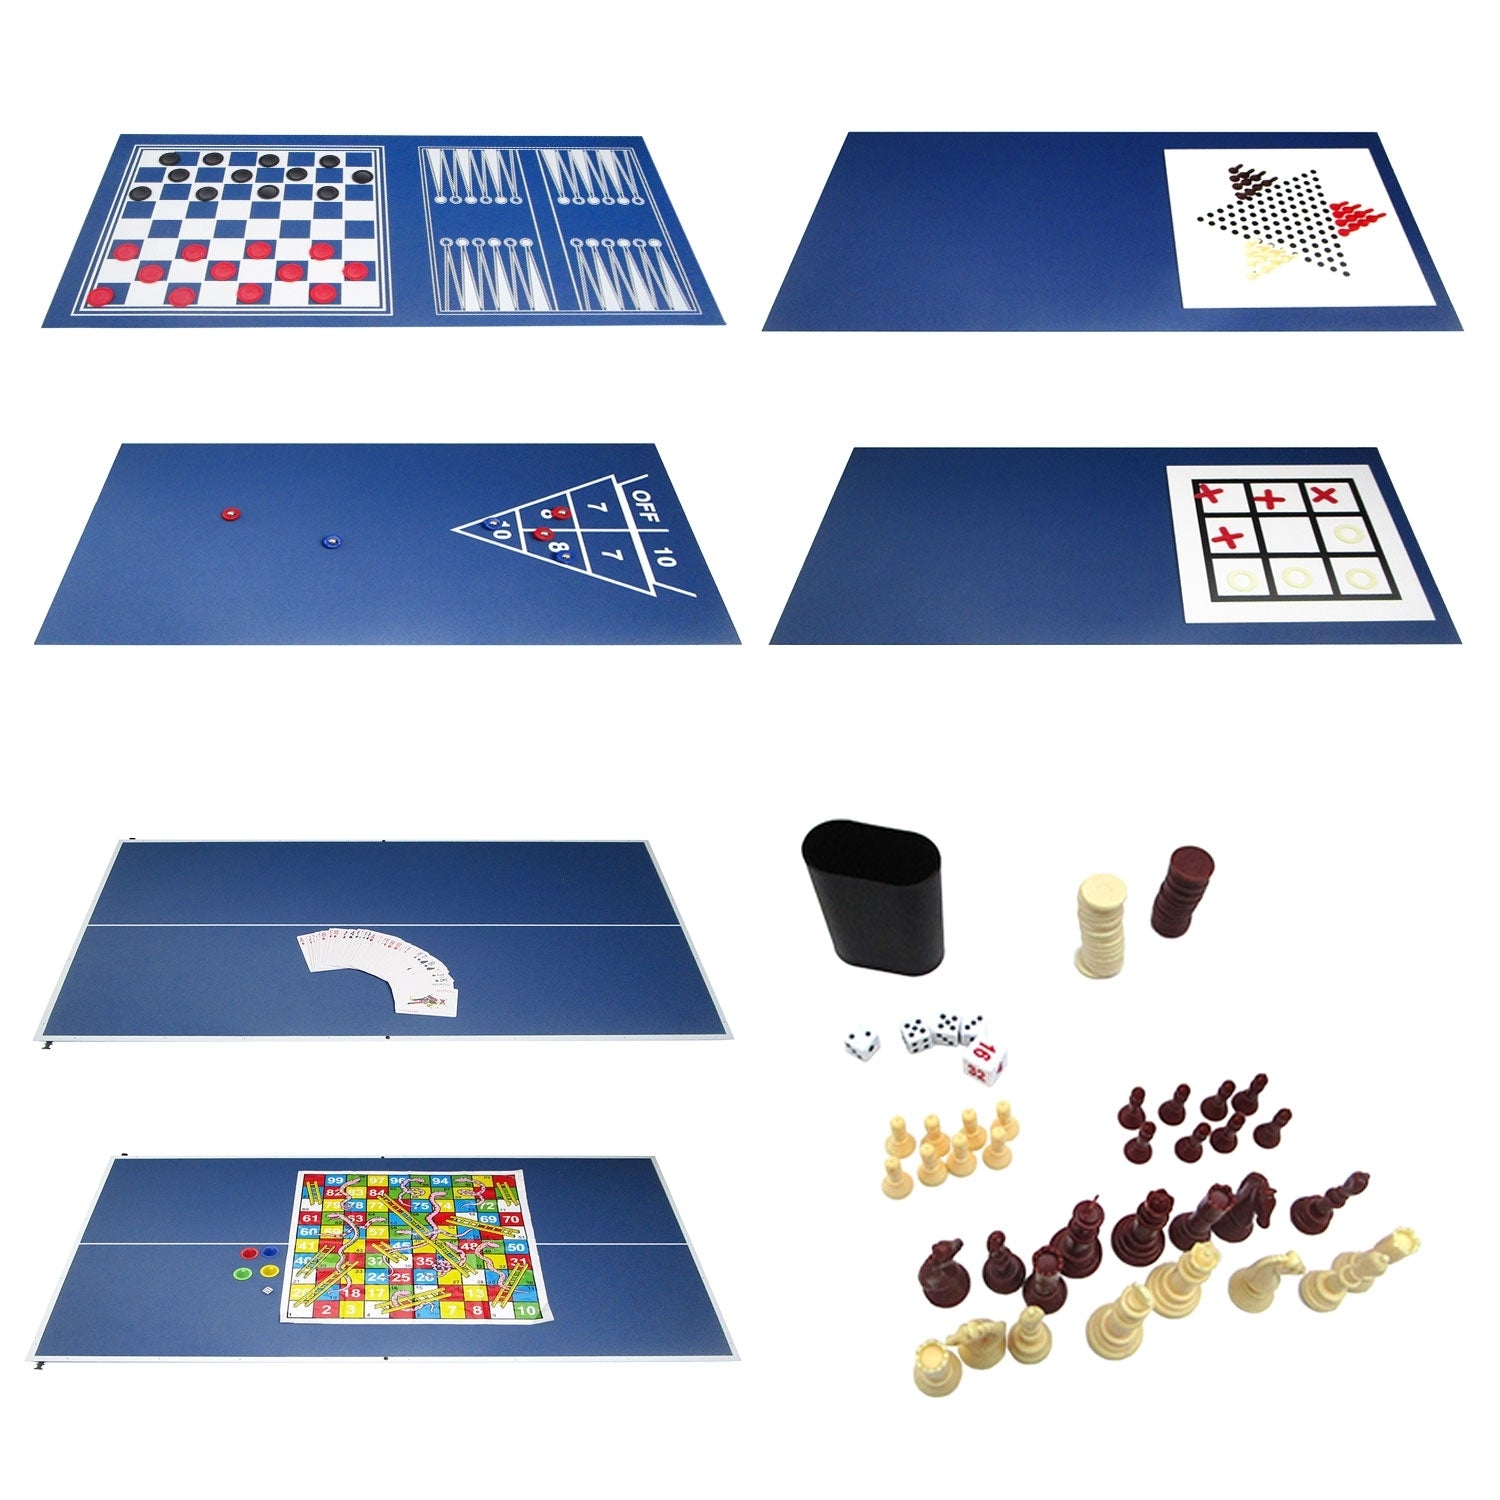 OLYMPIC - Mesa Multi-jogos 20 em 1 - Adultos e Crianças - Compacta - C  106,6 x L 60,5 x A 80,5 CM - Estrutura em MDF - BENEFFITO